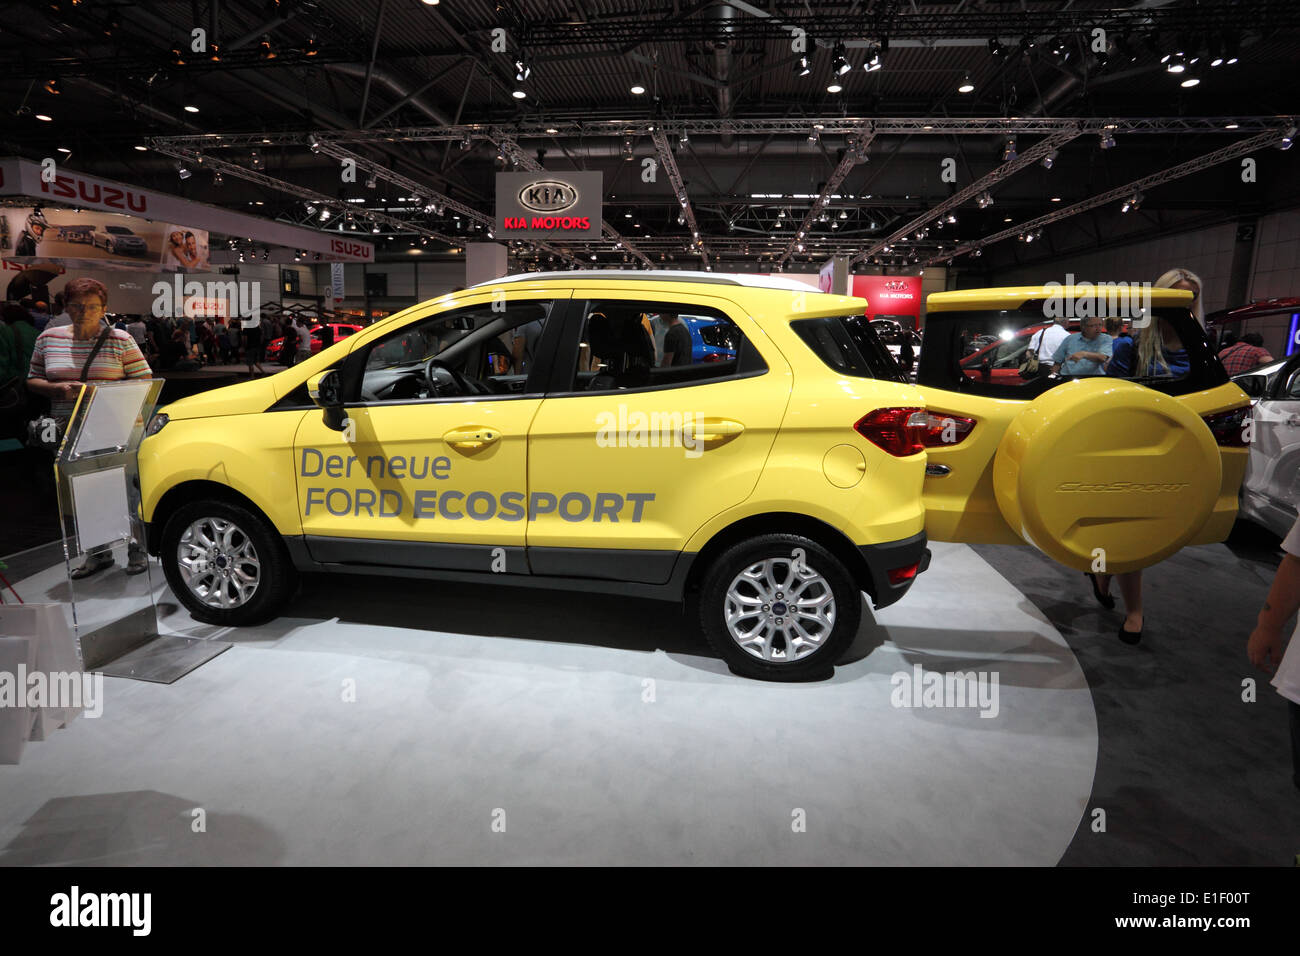 Nouvelle Ford Ecosport à l'AMI - Salon International de l'Auto Mobile le 1er juin 2014 à Leipzig, Saxe, Allemagne Banque D'Images